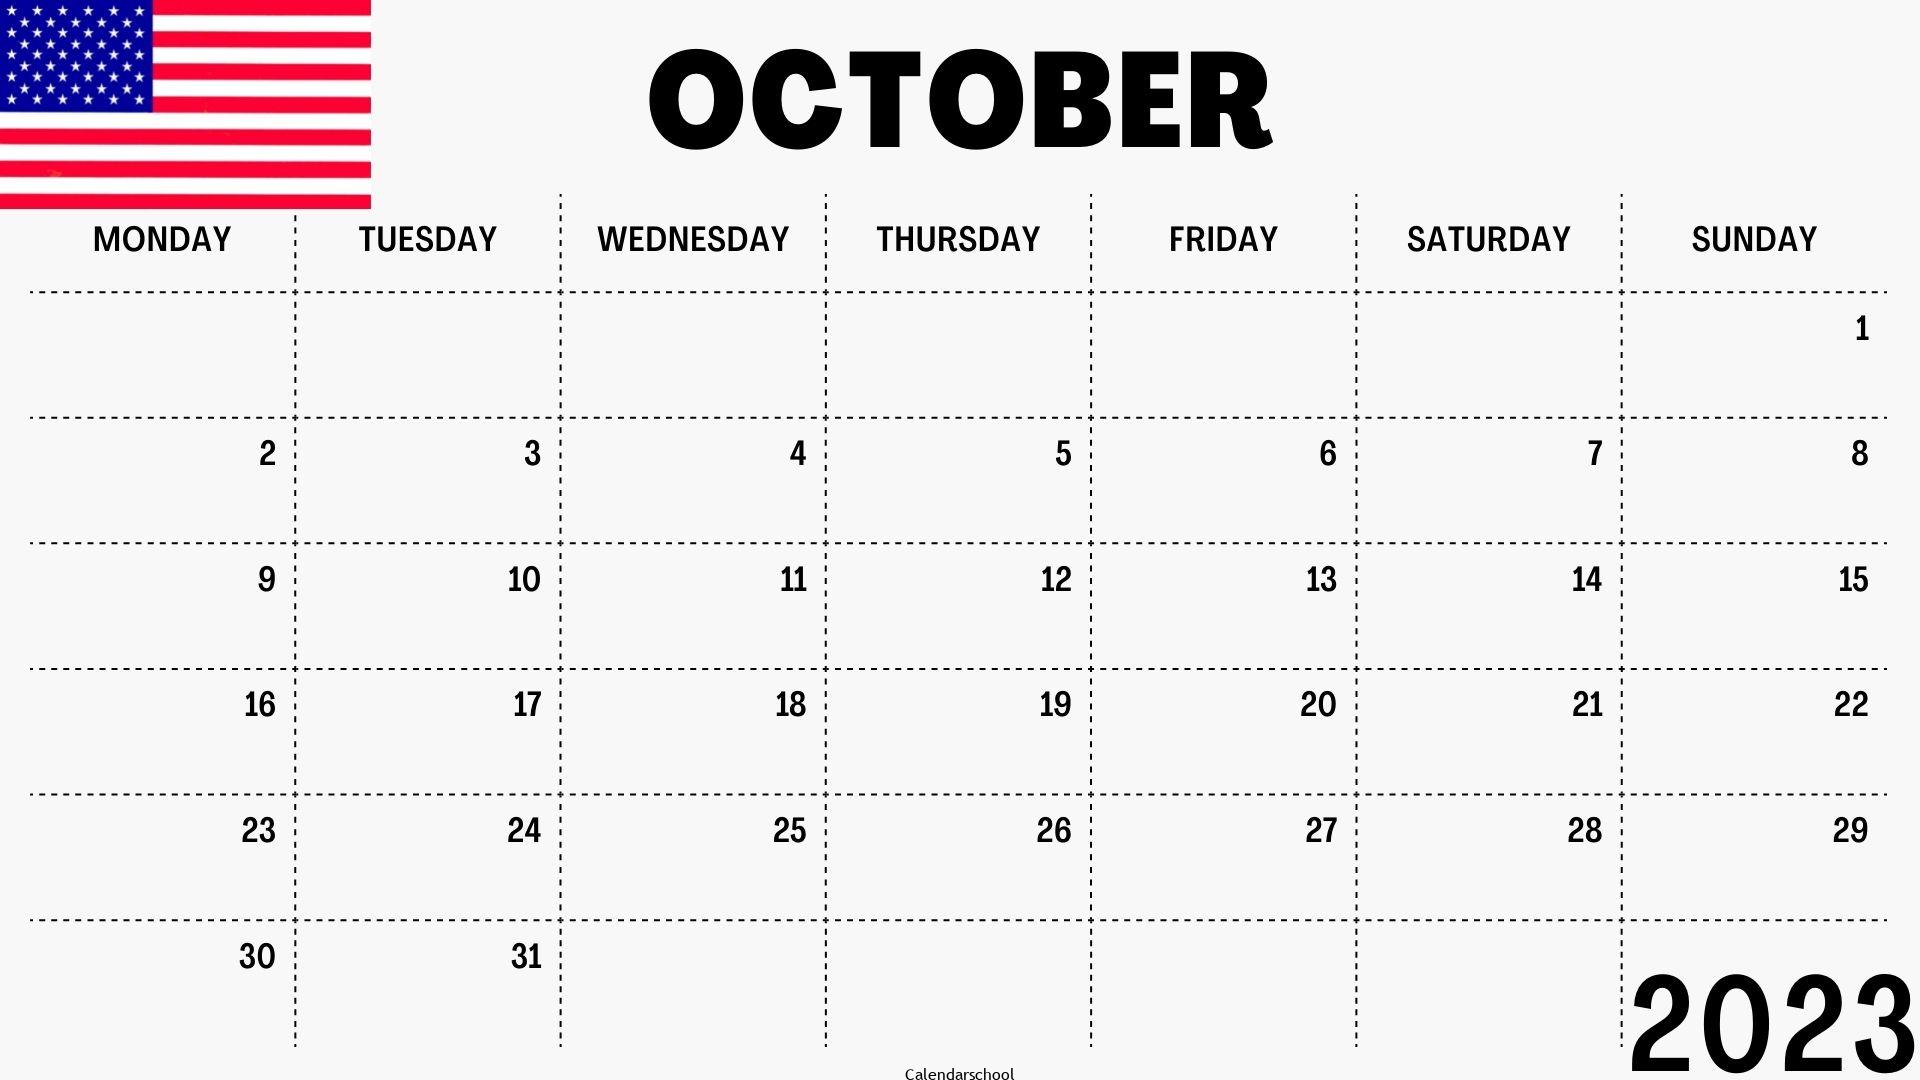 October 2023 Calendar with Holidays USA